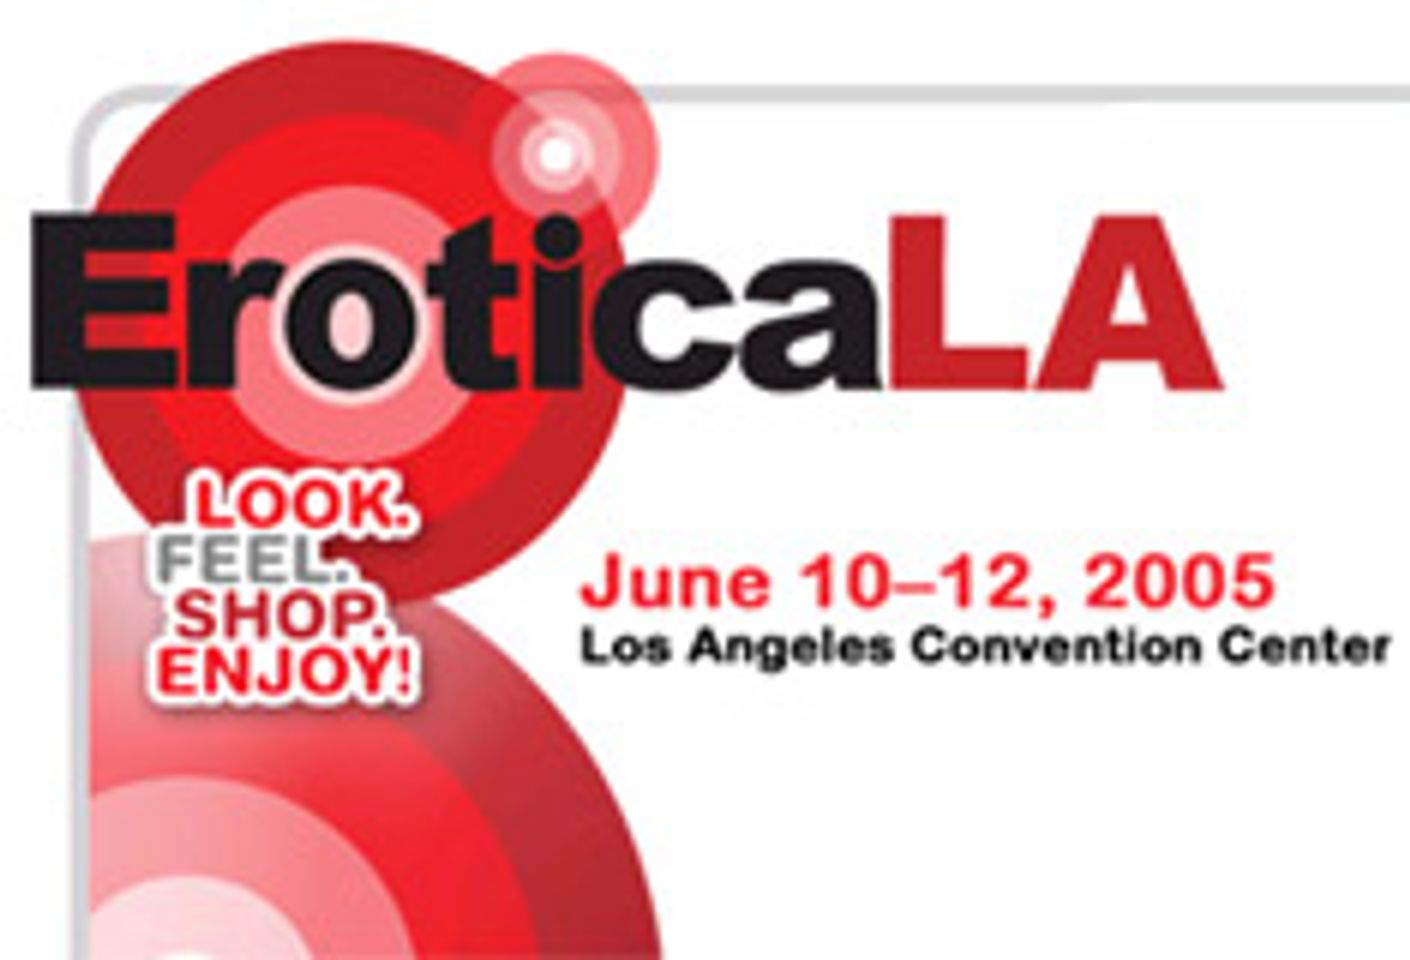 Erotica Los Angeles Returns to LA Convention Center in June - la weekly june 10 12